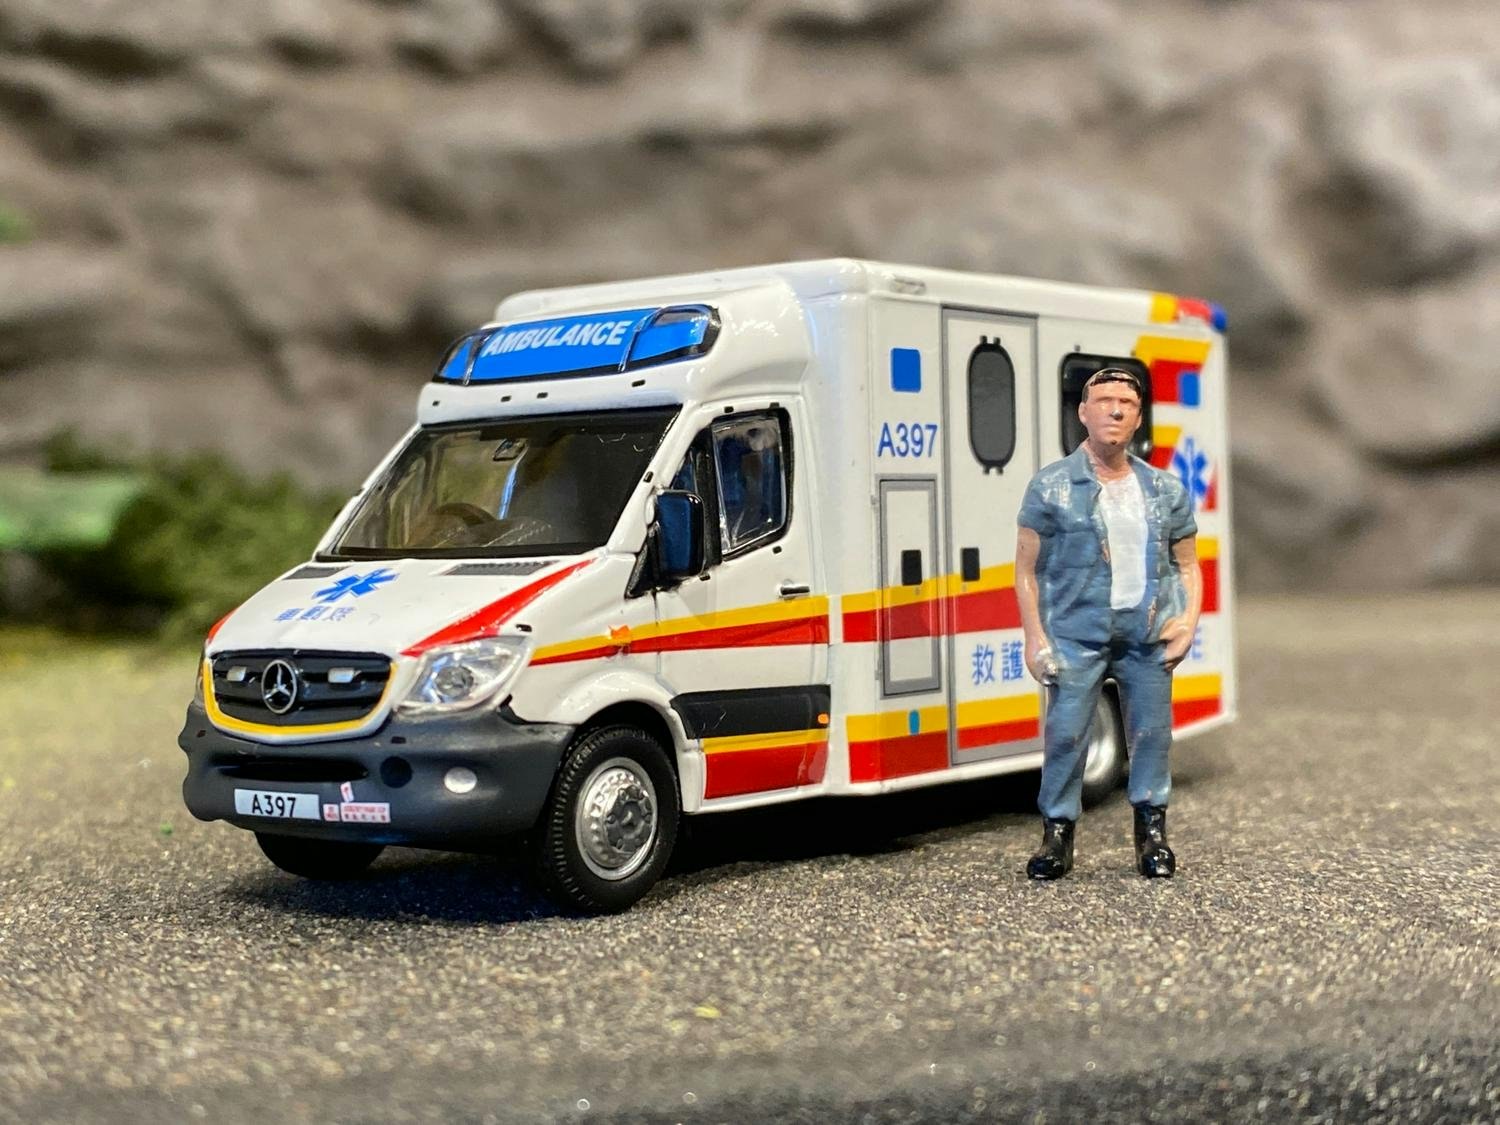 Skala 1/64 MERCEDES-BENZ Sprinter HKFSD Ambulance (A186) fr Tiny Toys